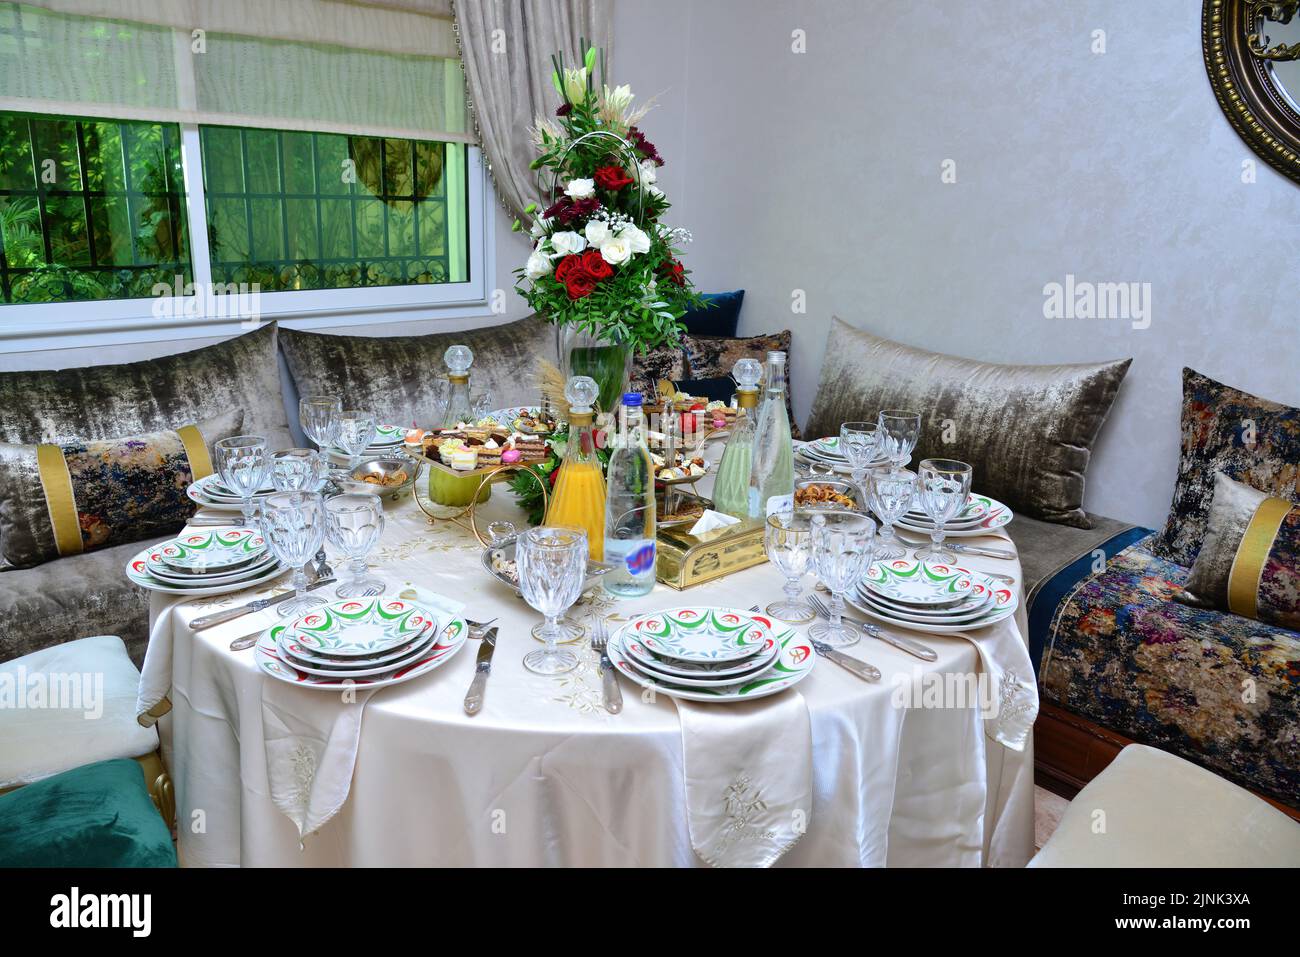 Salon marocain avec tables de mariage, tasses et chaises Banque D'Images